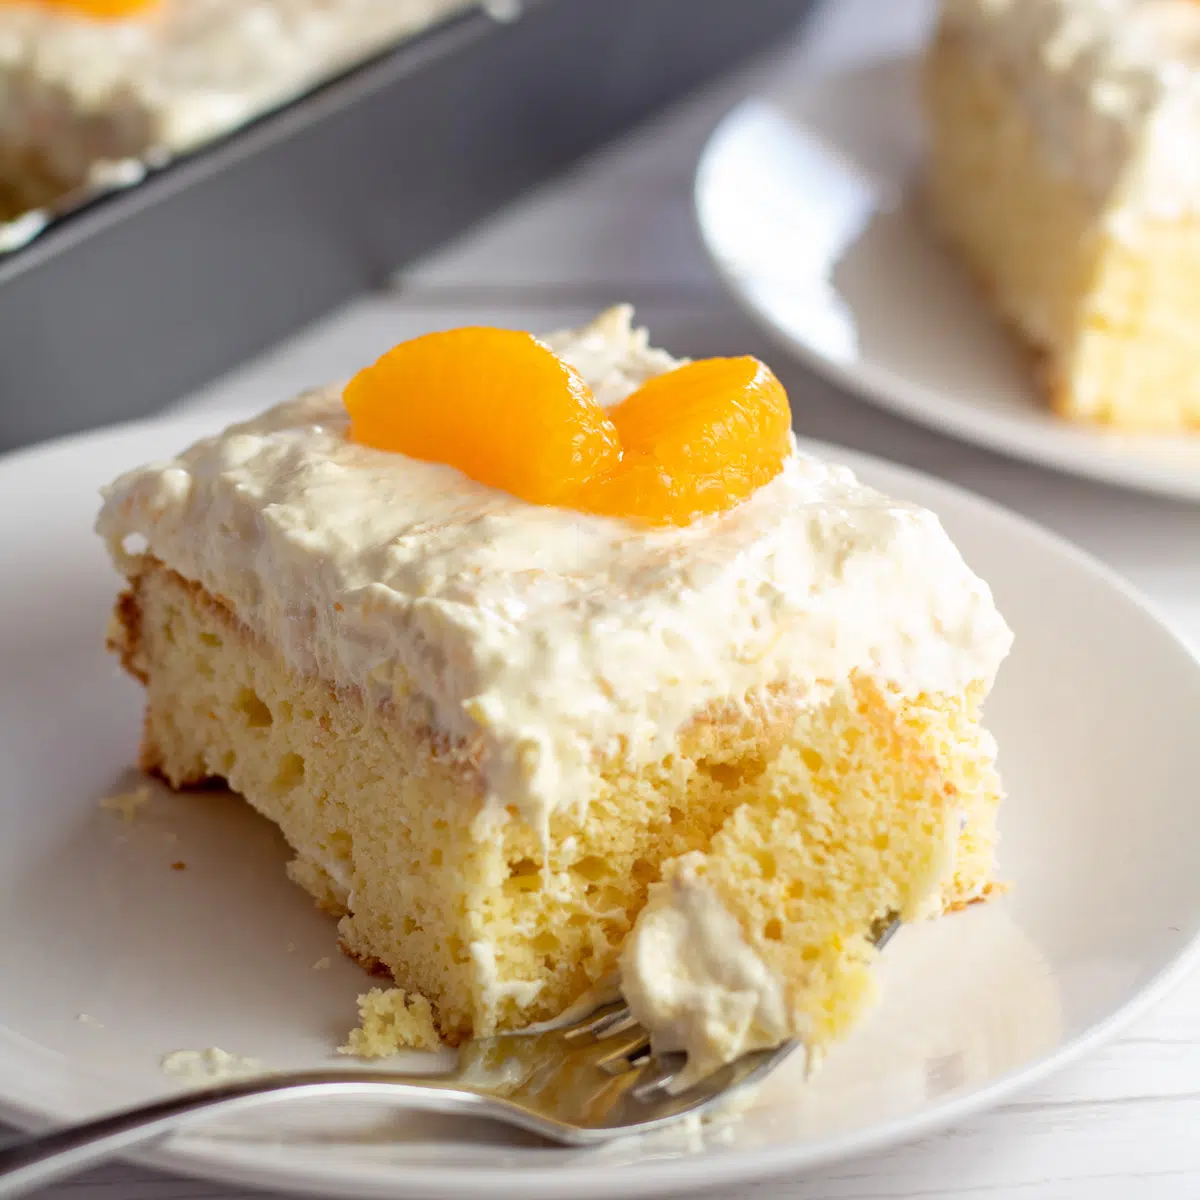 Imagen cuadrada de una rebanada de pastel de naranja mandarina en un plato blanco.